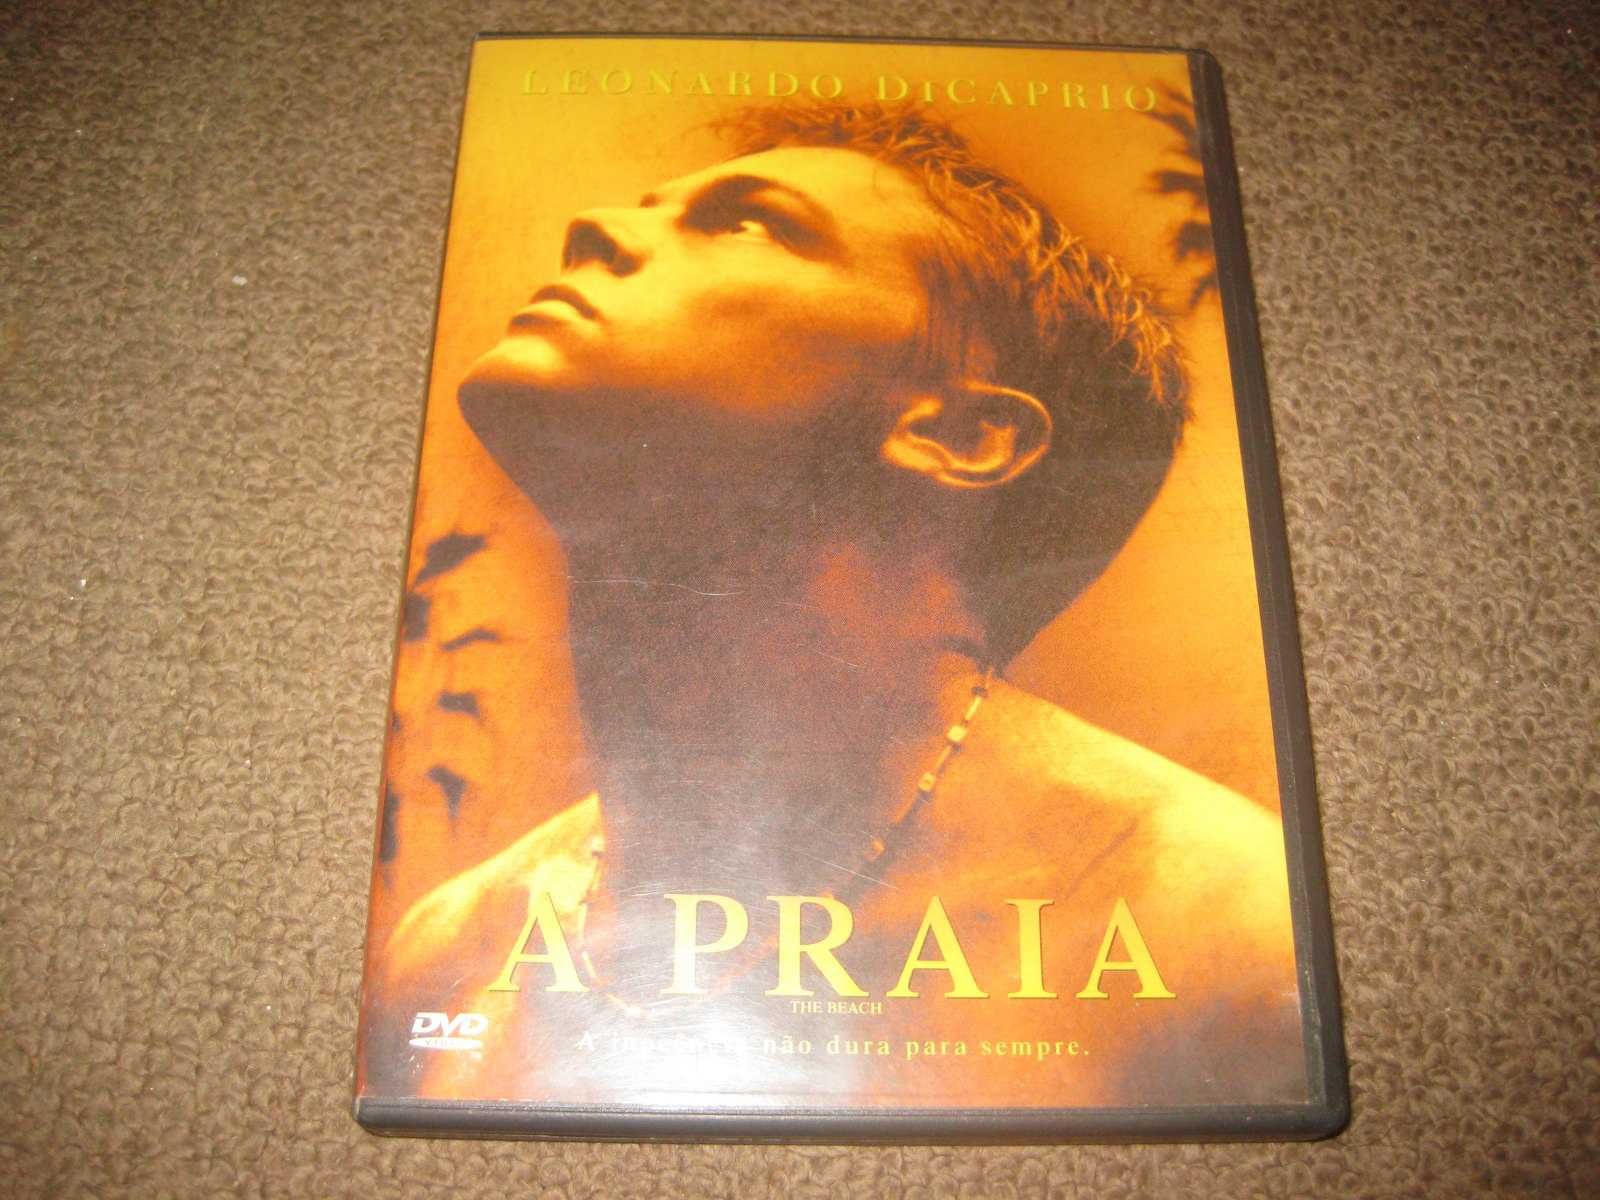 DVD "A Praia" com Leonardo DiCaprio